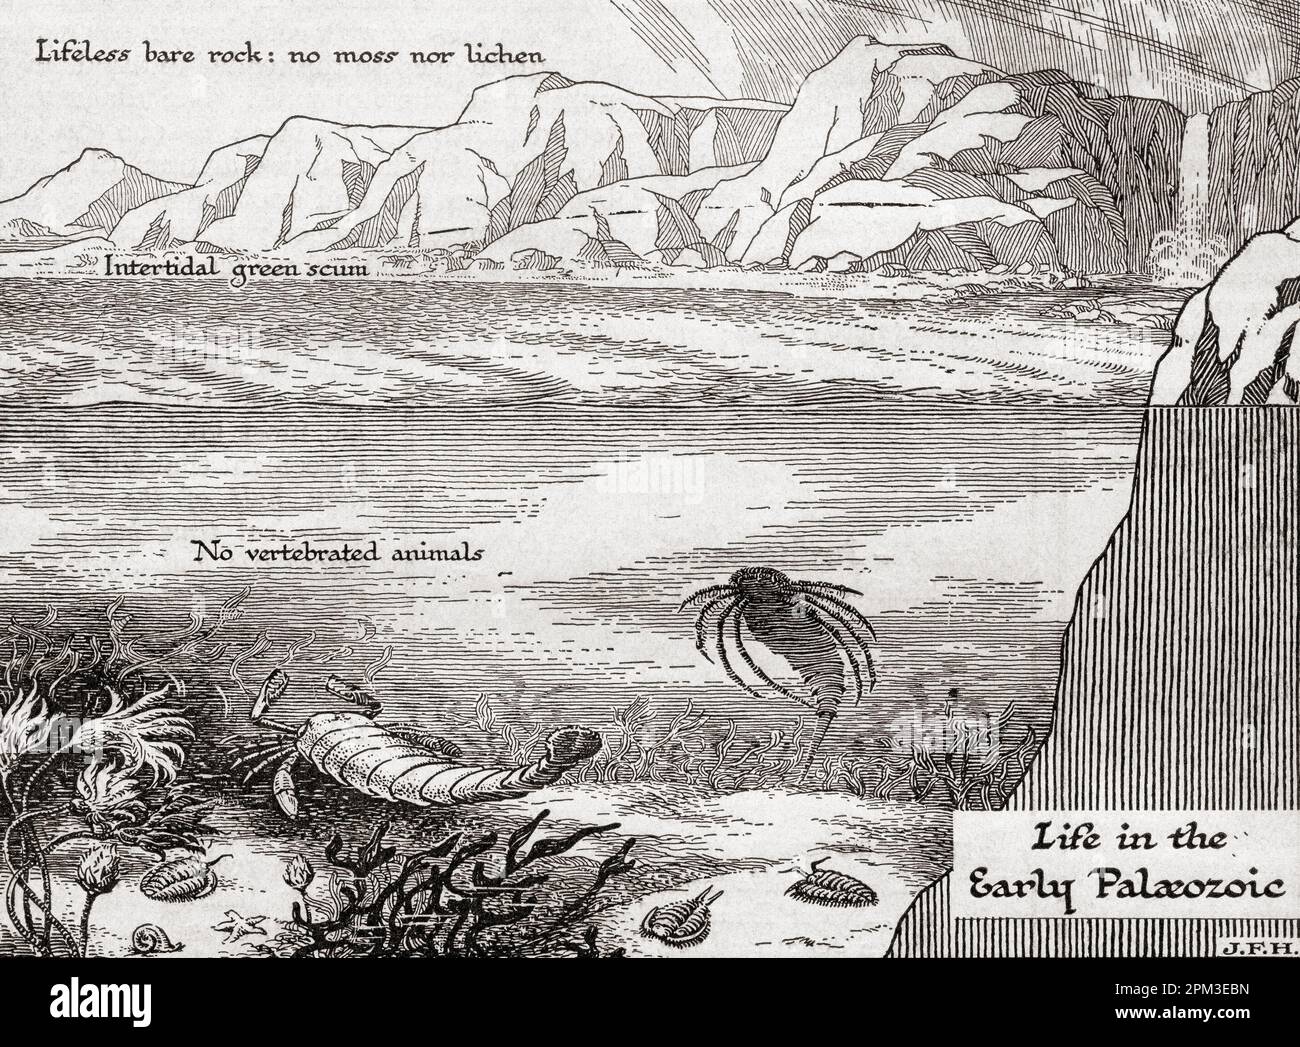 Das Leben im frühen paleozoischen oder paläozoischen Zeitalter. Aus dem Buch Outline of History von H.G. Wells, veröffentlicht 1920. Stockfoto